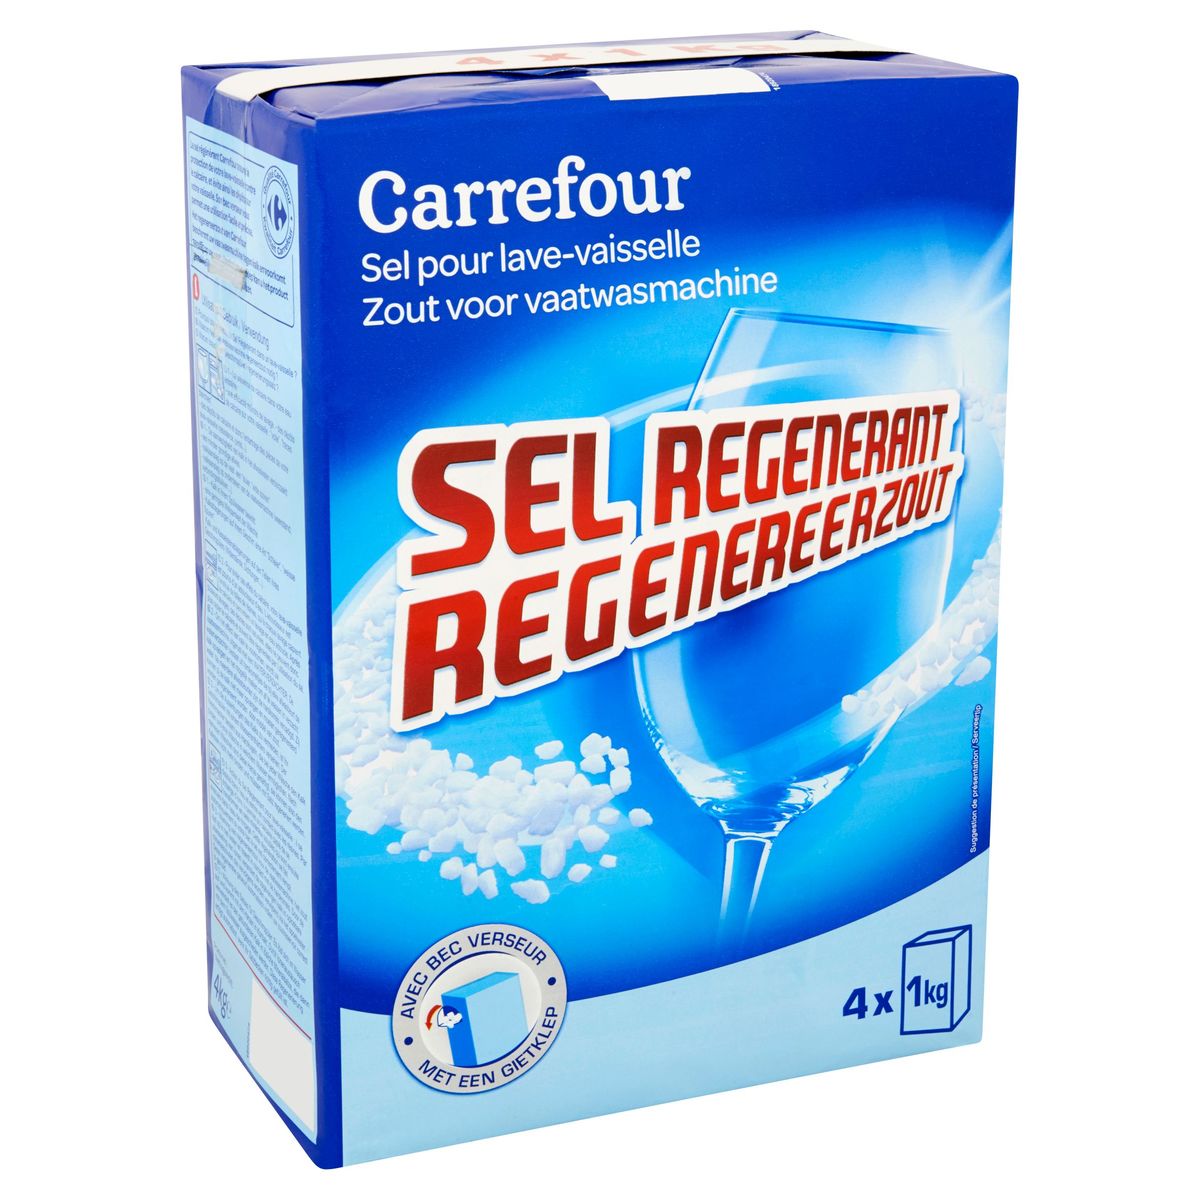 Carrefour Regenereerzout Zout voor Vaatwasmachine 4 x 1 kg